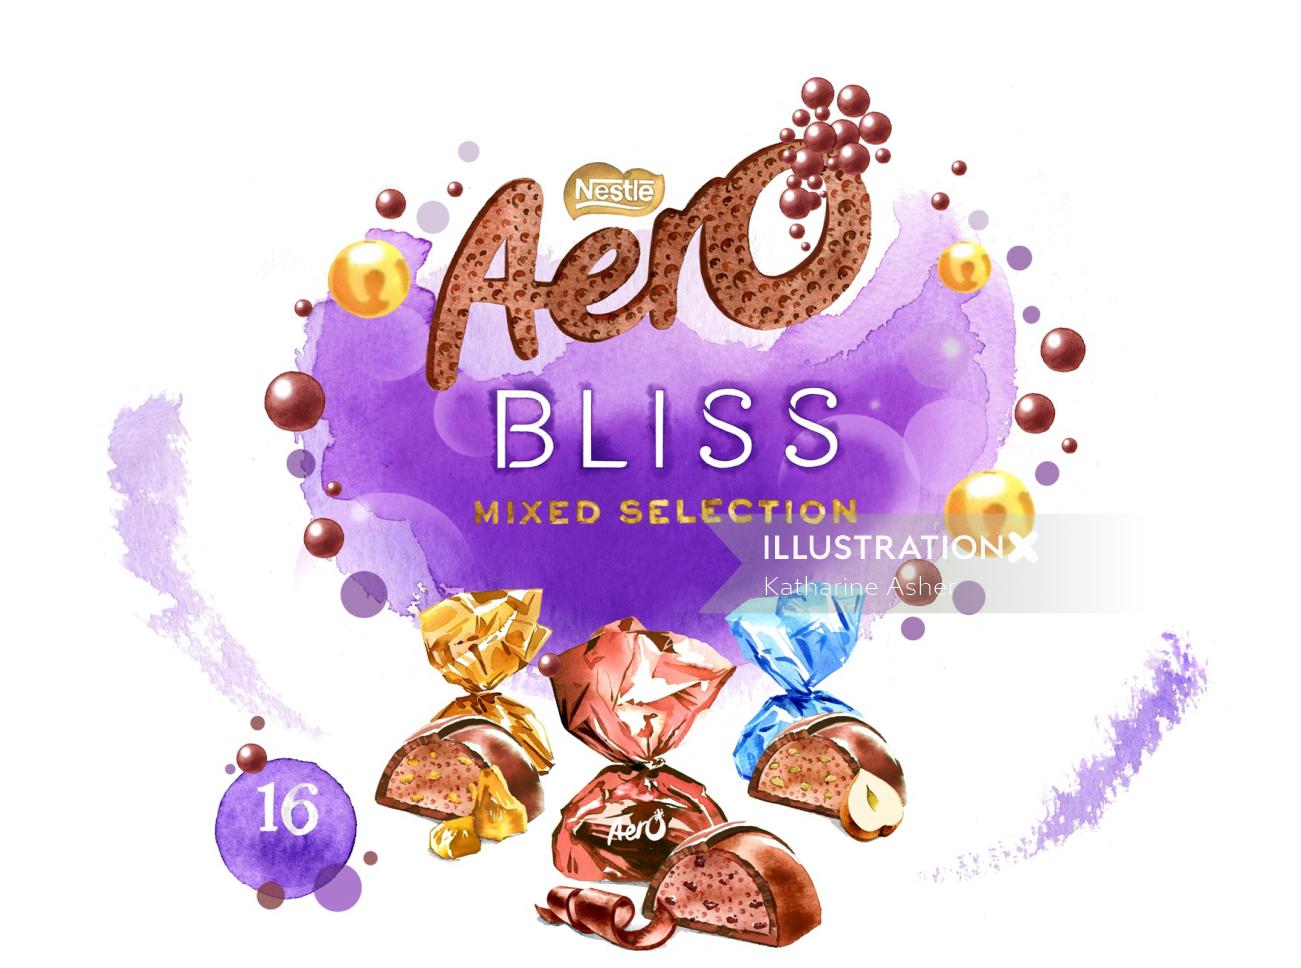 Envasado de chocolates Aero Bliss